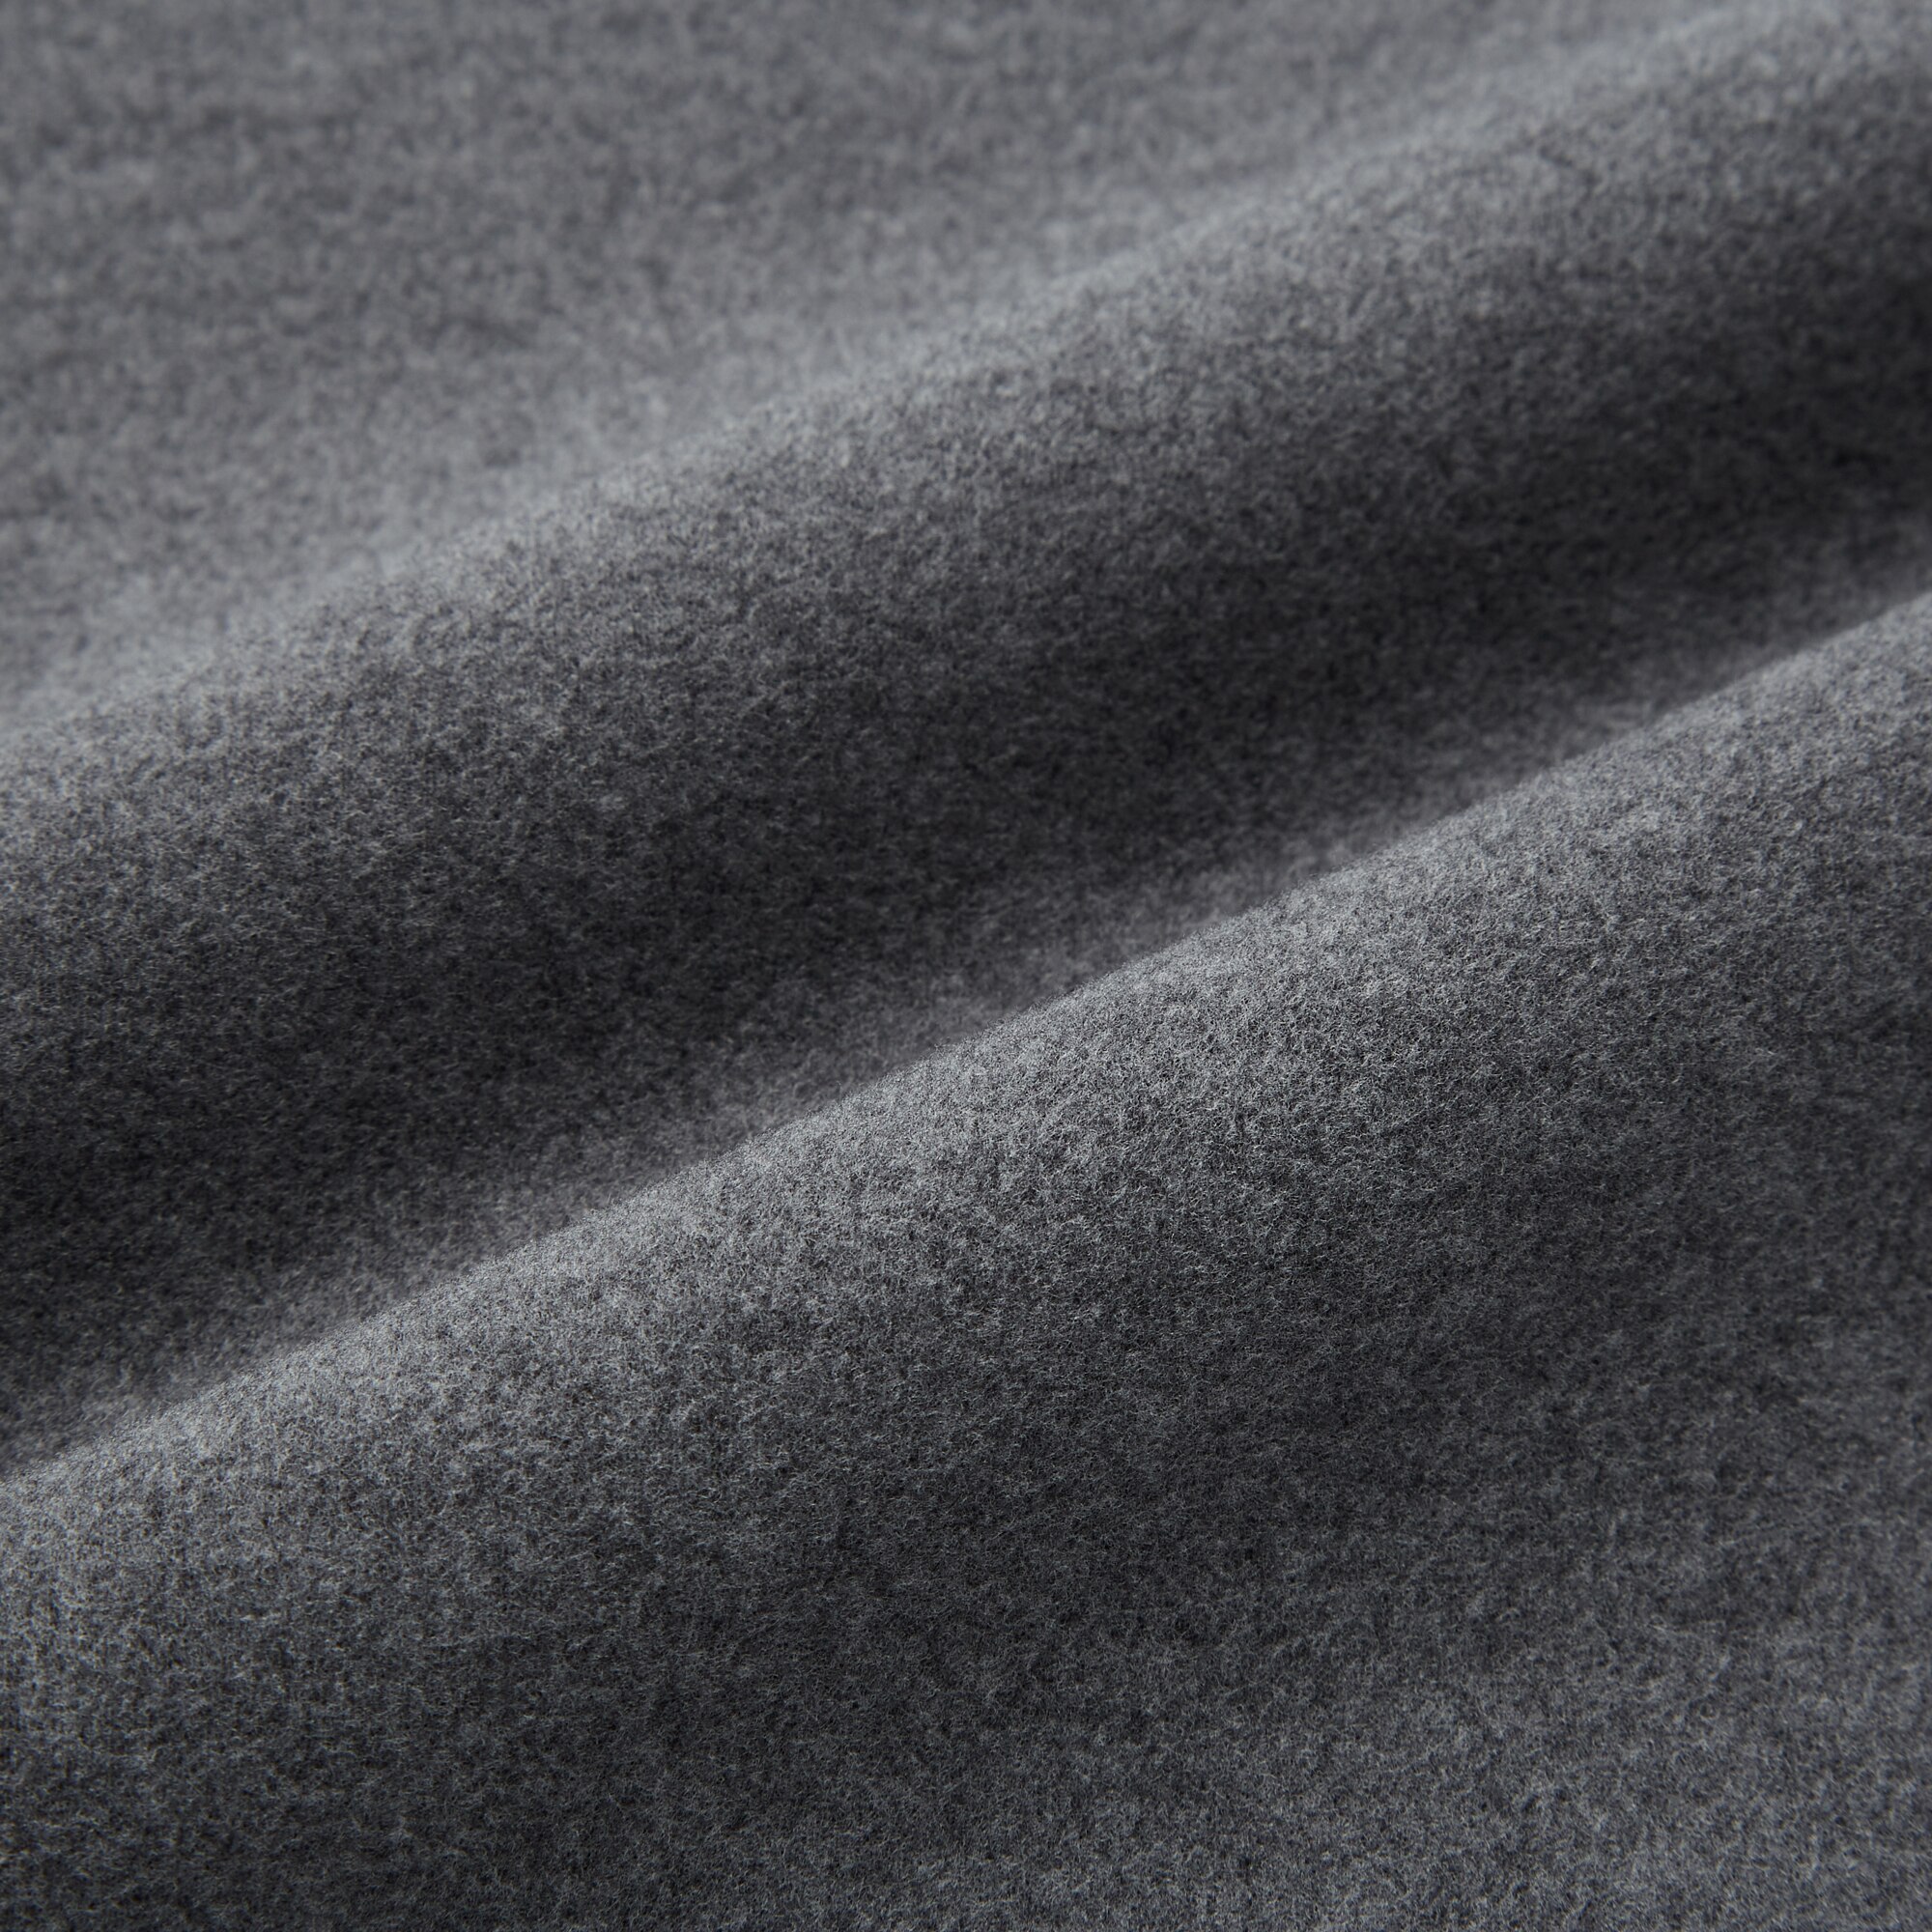 HEATTECH Fleece Turtleneck Long-Sleeve T-Shirt | UNIQLO US